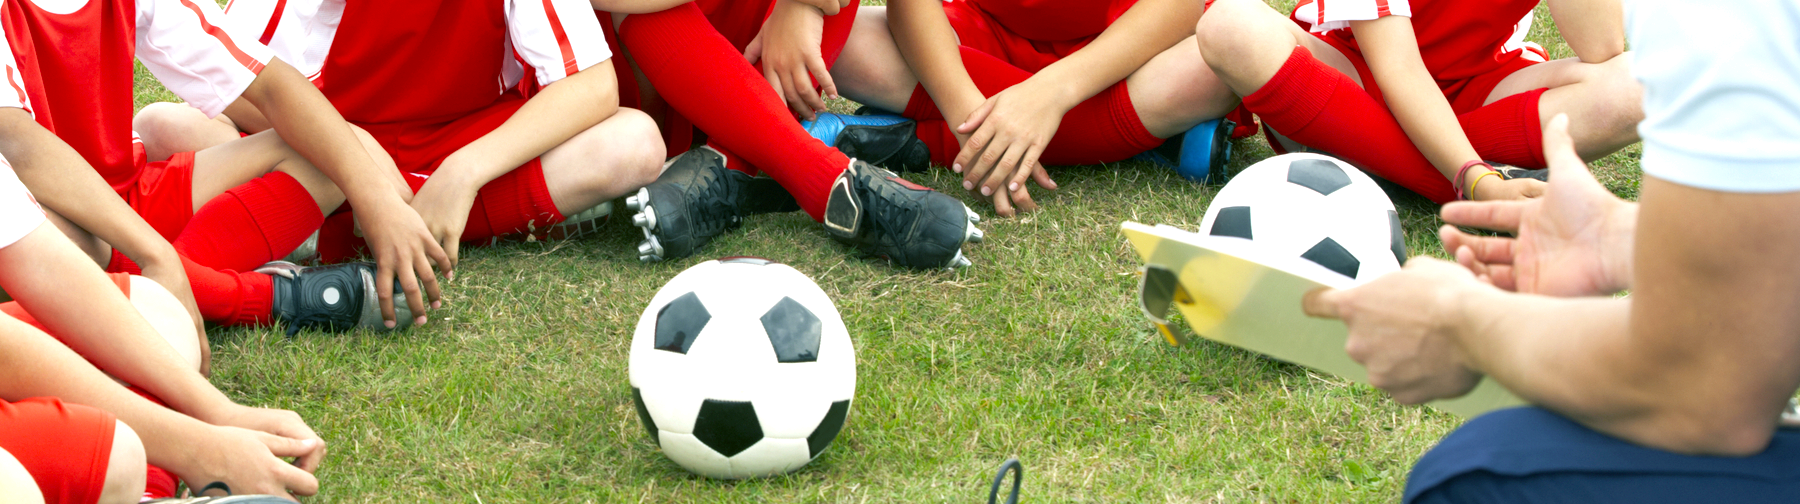 children sitting around soccer ball